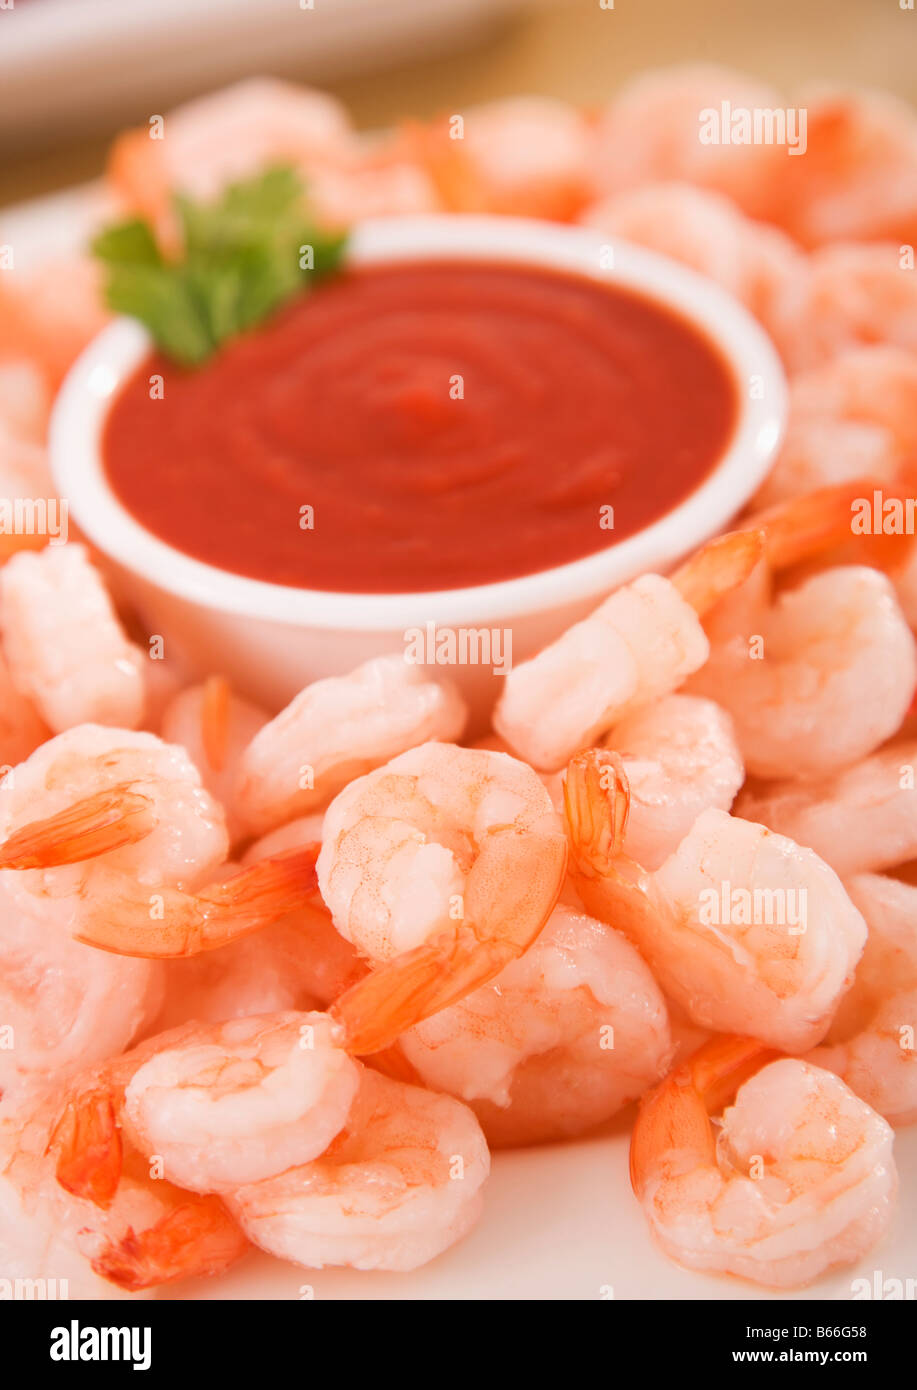 Shrimp with sauce, close-up Stock Photo